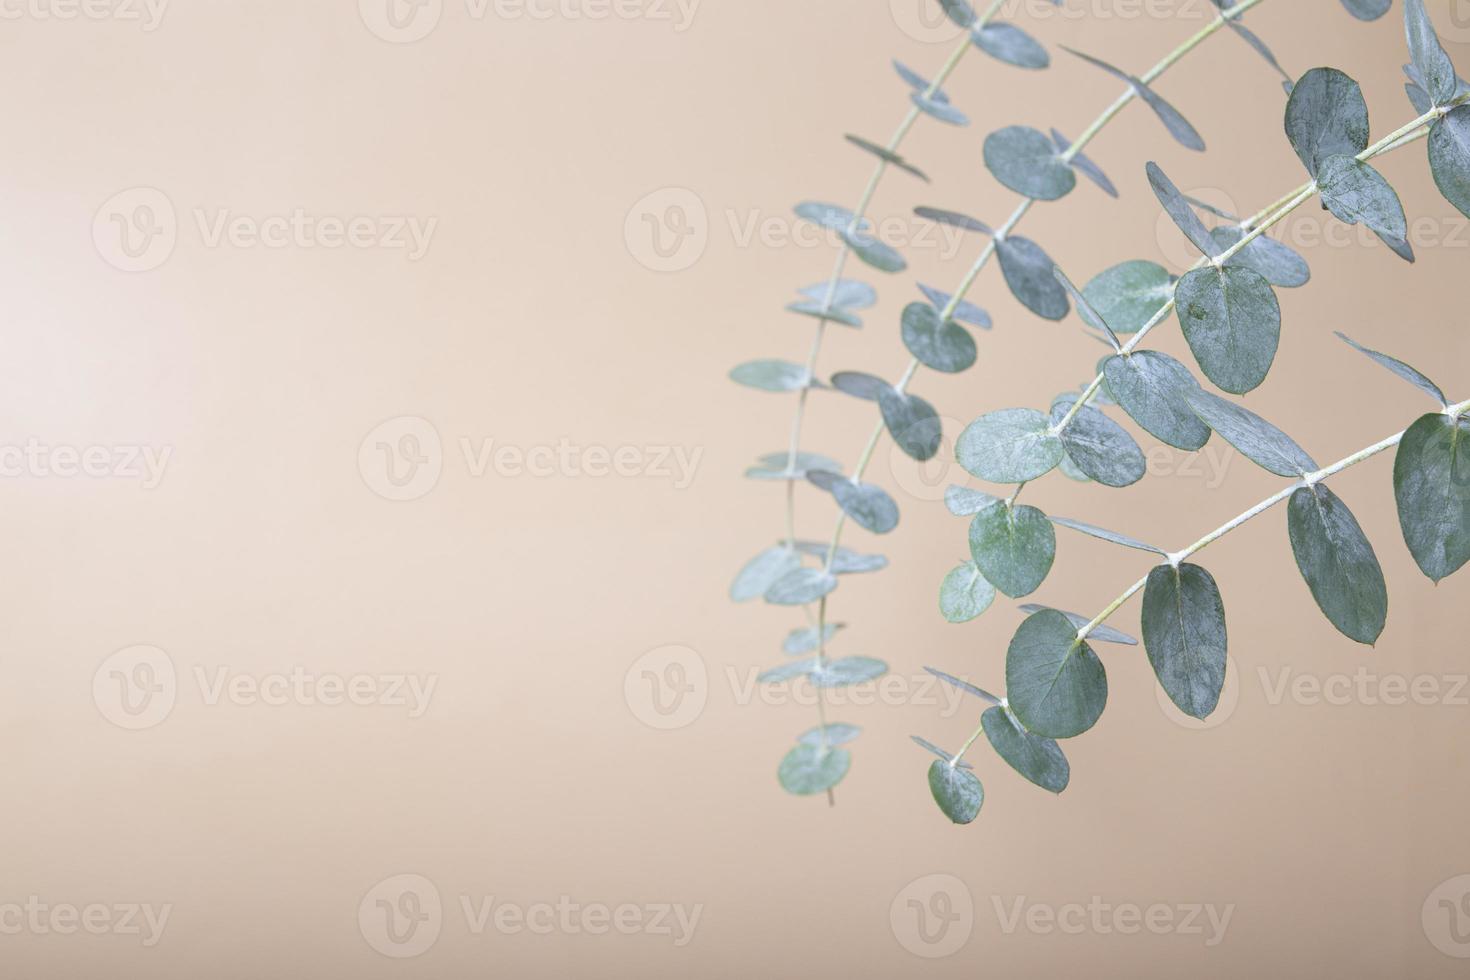 eucalyptusbladeren op een gekleurde achtergrond. blauwgroene bladeren op takken voor abstracte natuurlijke achtergrond of poster foto